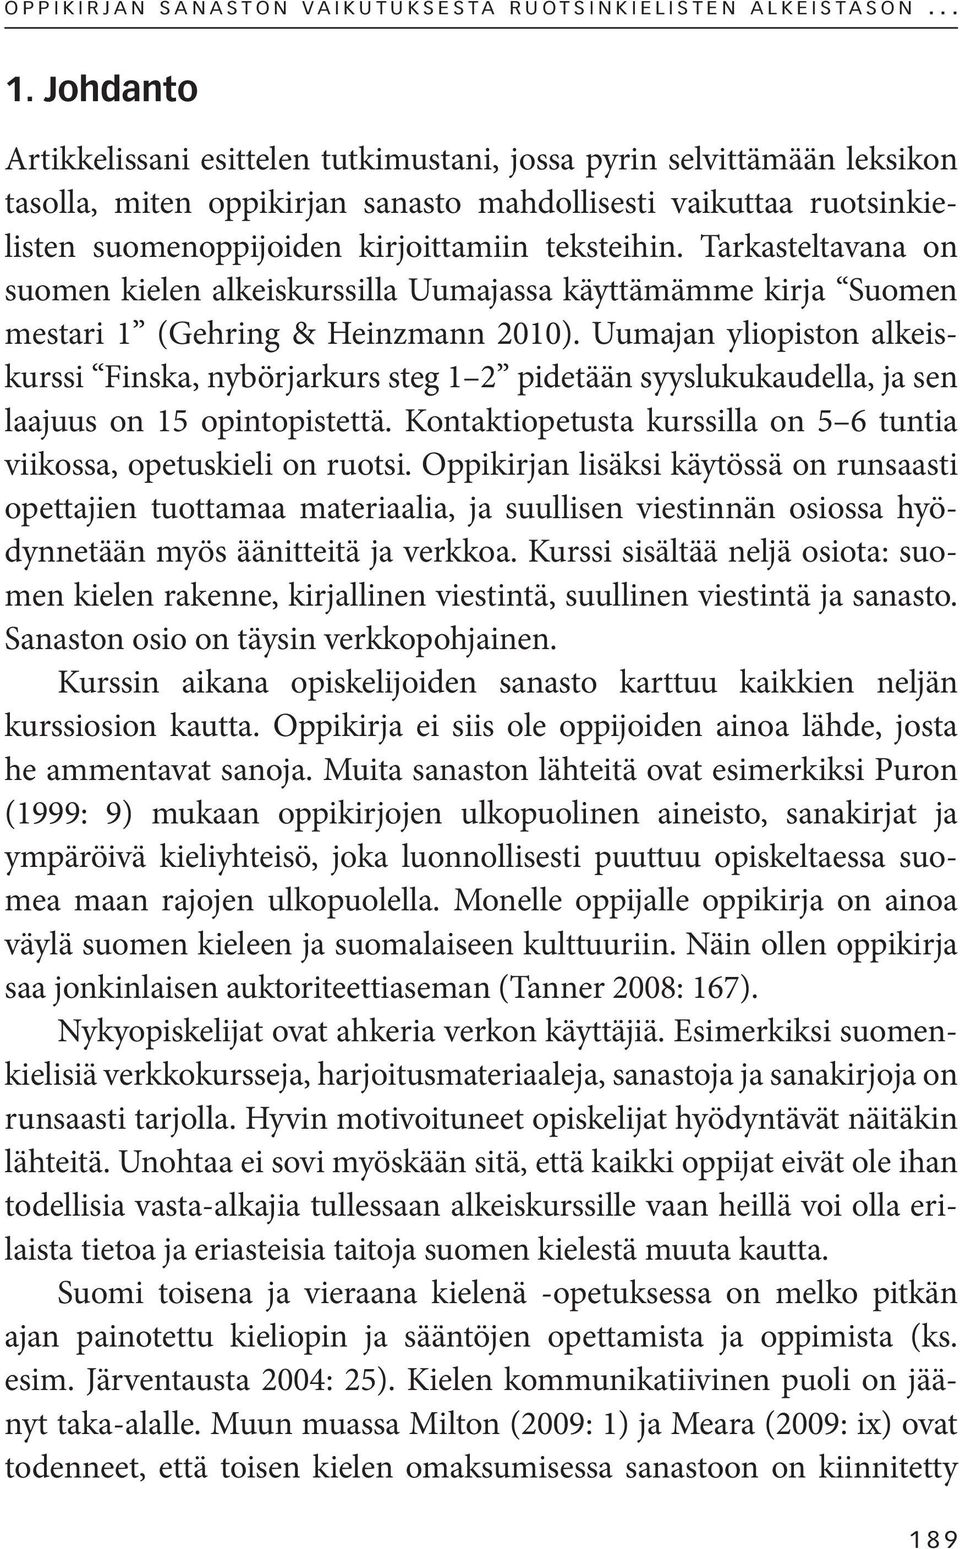 Tarkasteltavana on suomen kielen alkeiskurssilla Uumajassa käyttämämme kirja Suomen mestari 1 (Gehring & Heinzmann 2010).